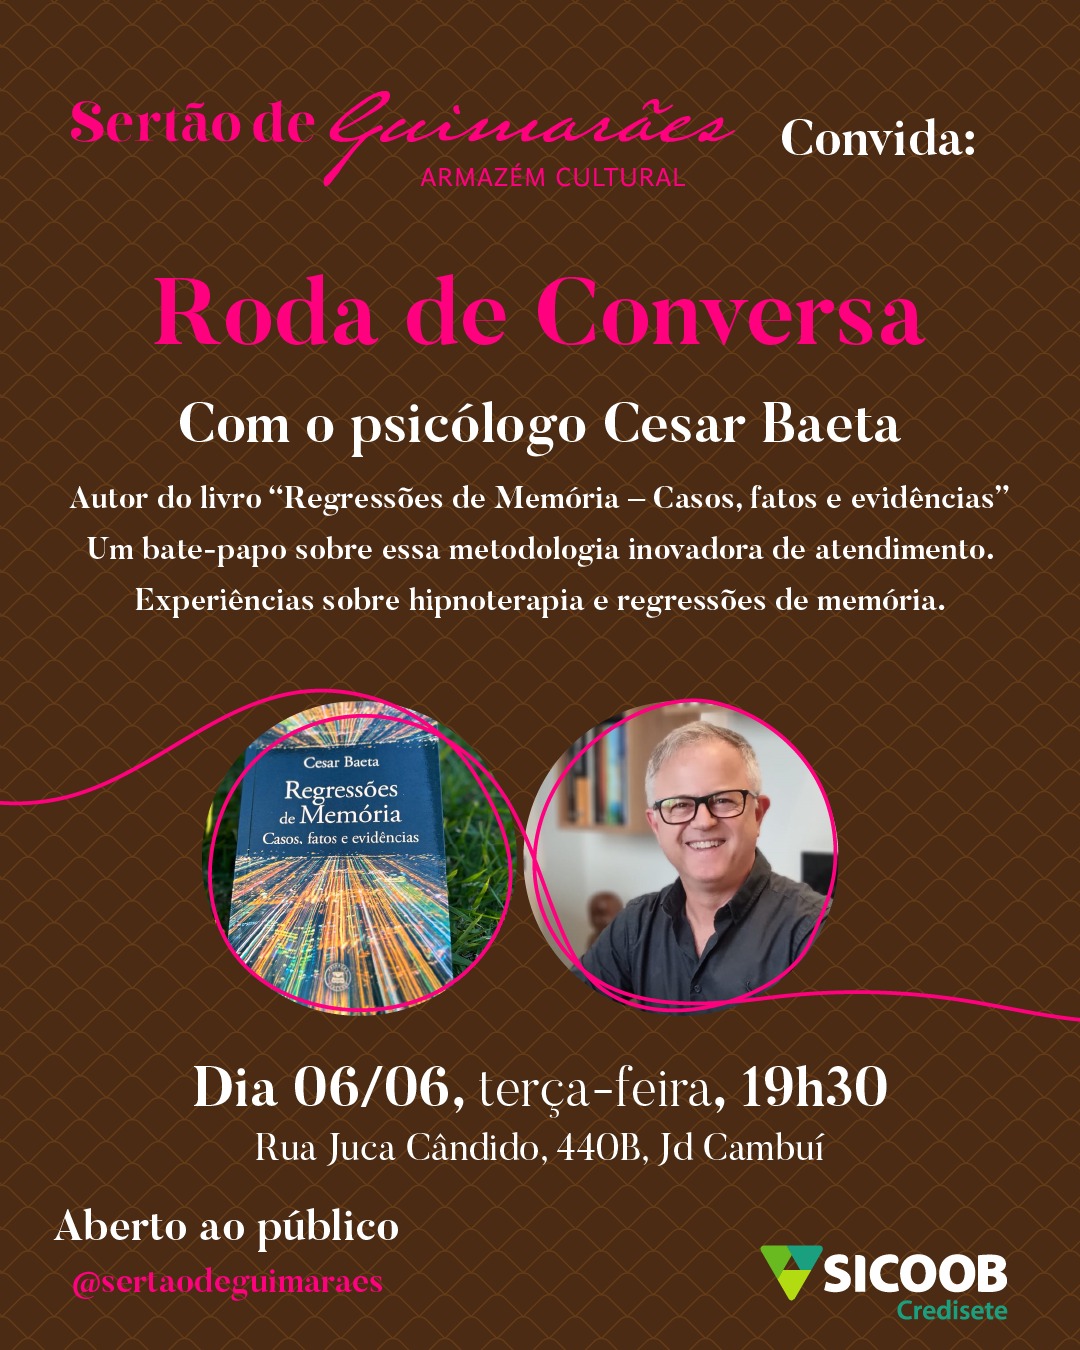 Sertão de Guimarães recebe psicólogo em Roda de Conversa